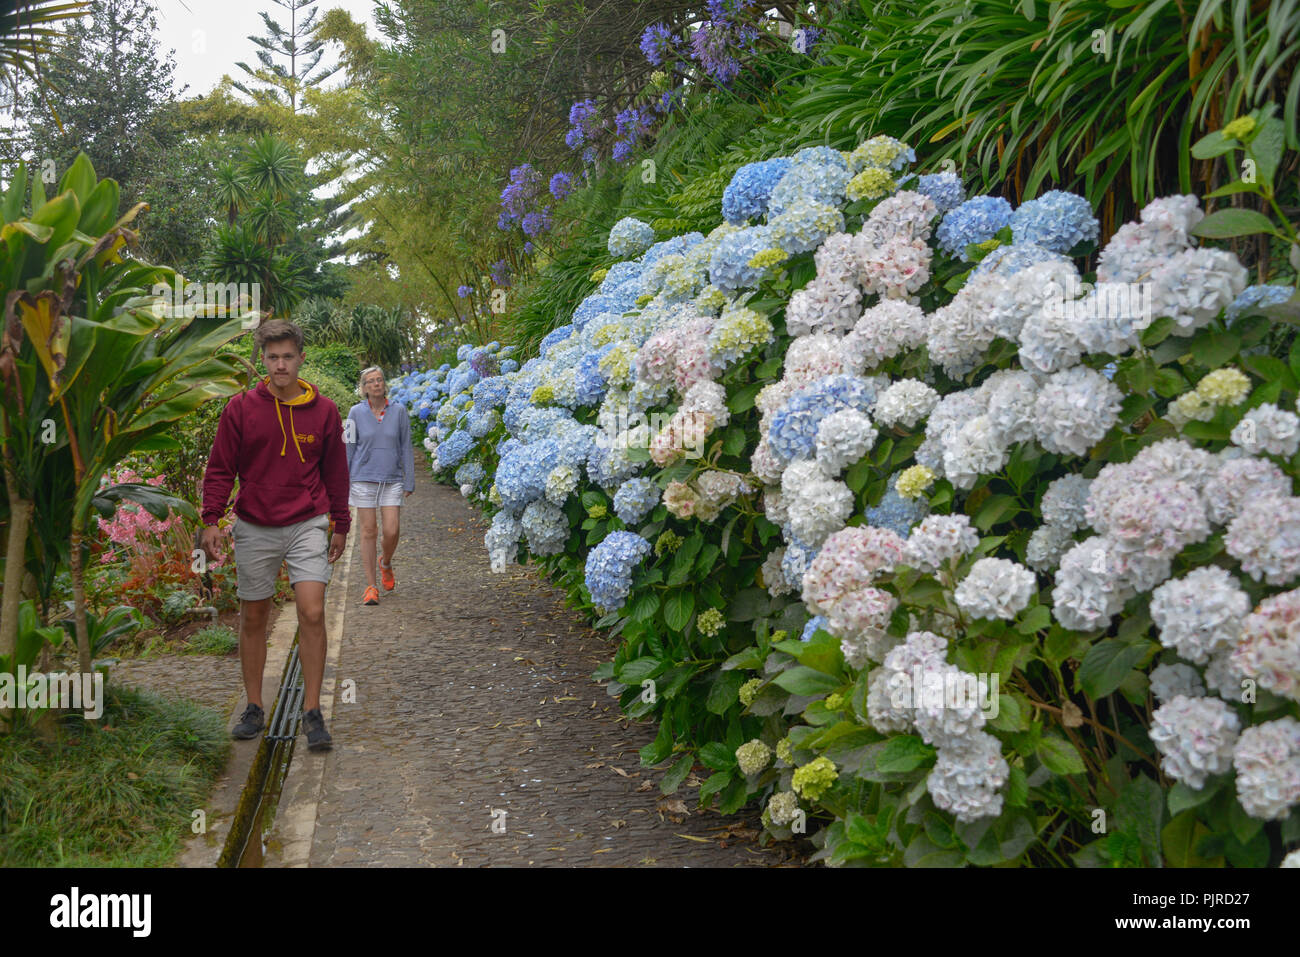 Hortensien (Hydrangea), der tropische Garten Monte Palace, Monte, Funchal, Madeira, Portugal, Hortensien (Hydrangea) Stockfoto